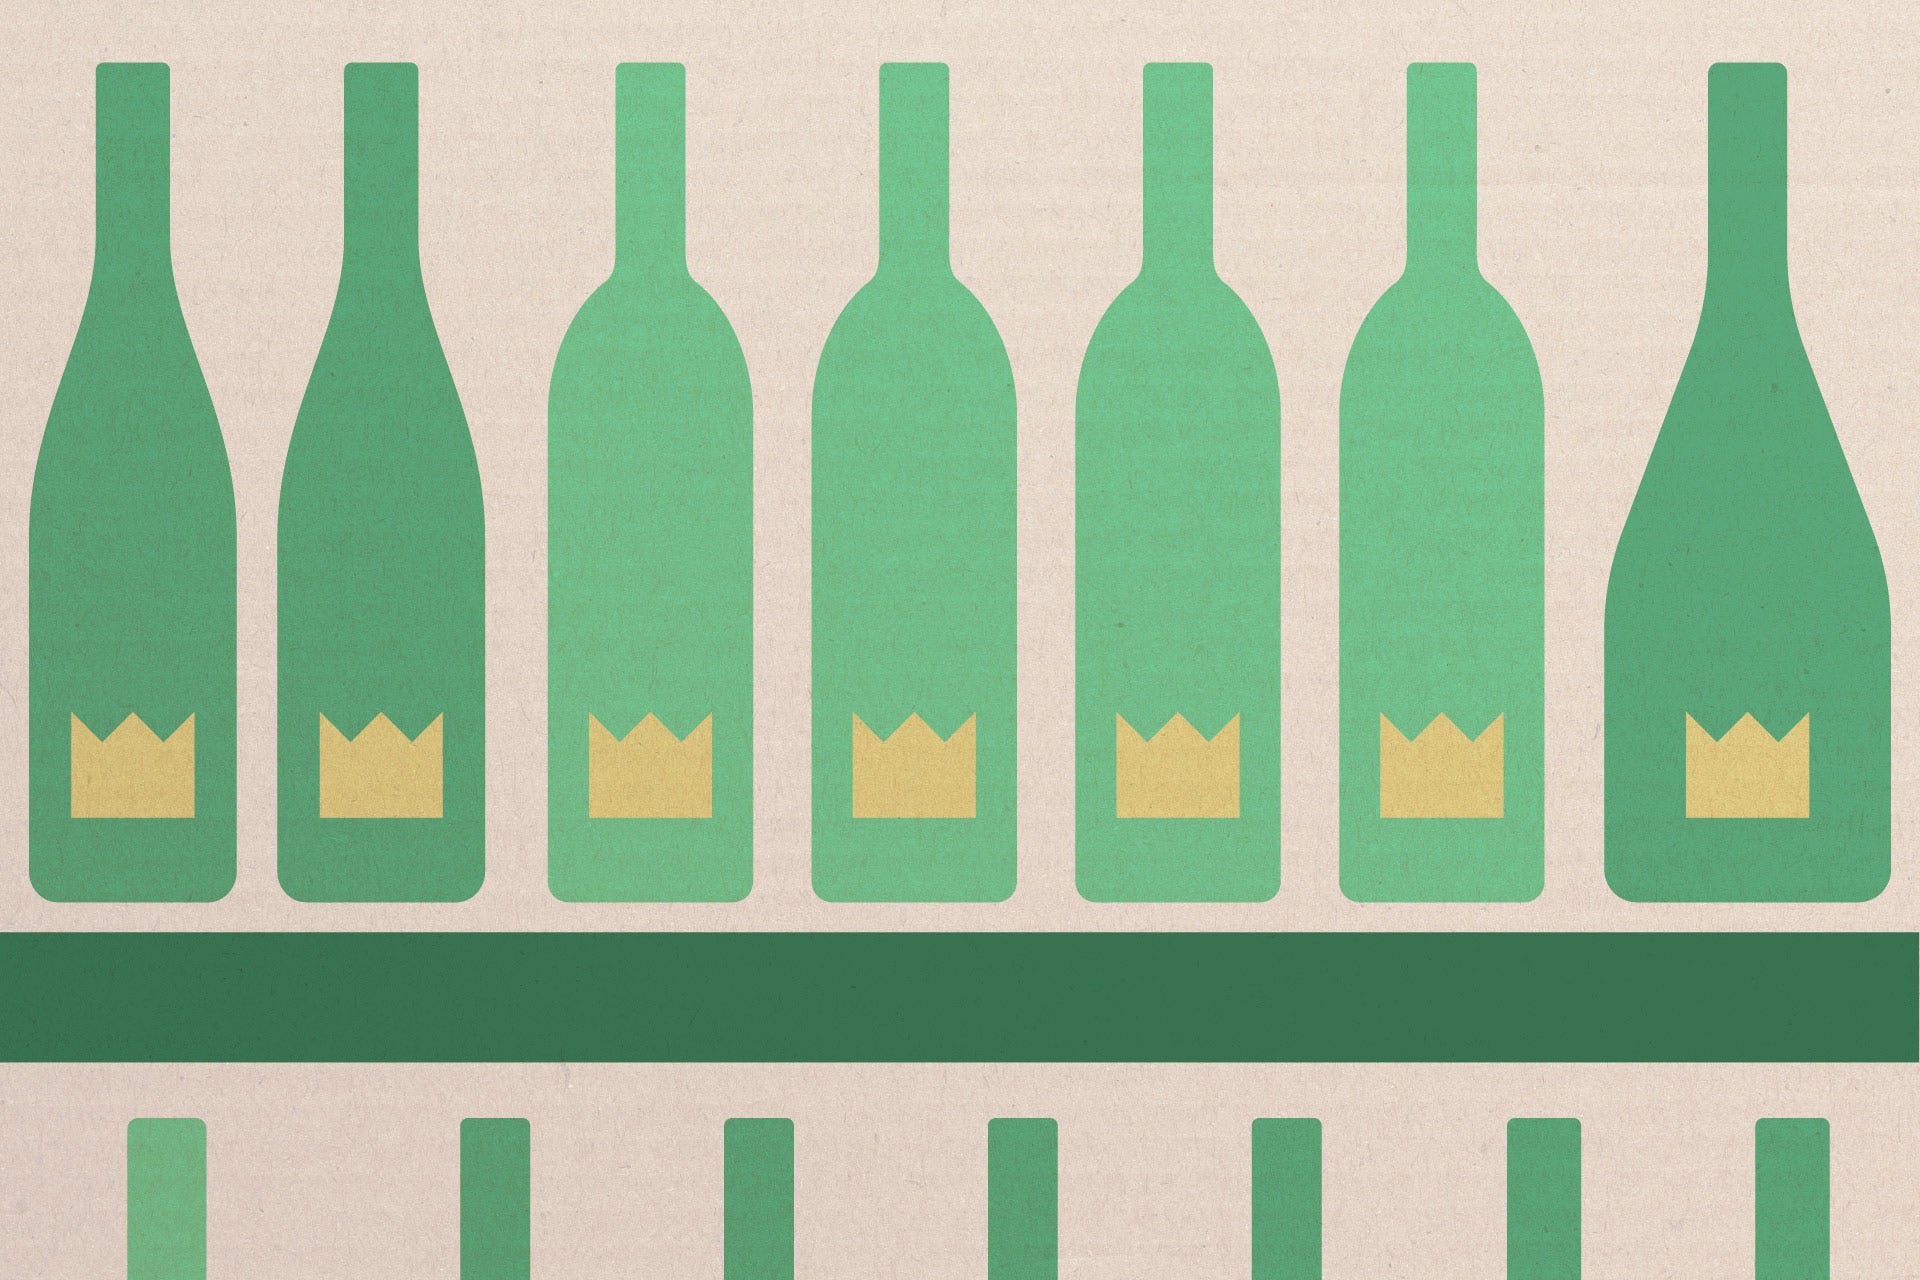 Illustration of wine bottles on a top shelf